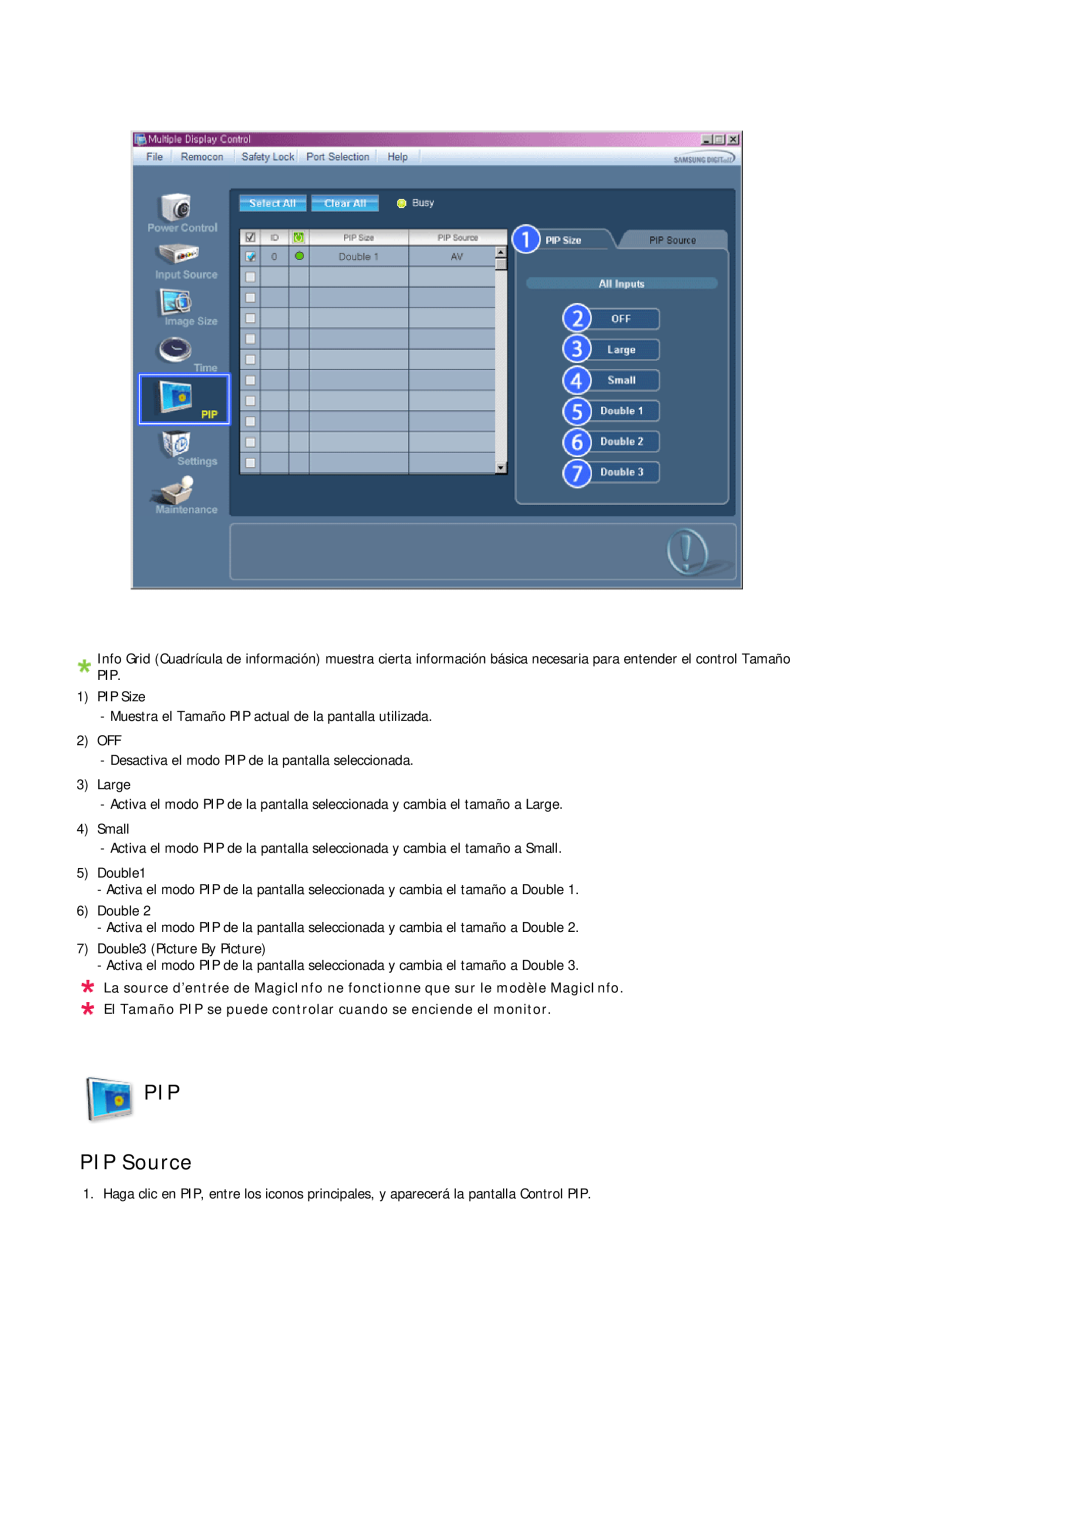 Samsung LH40TCUMBG/EN, LH46TCUMBC/EN manual PIP PIP Source, El Tamaño PIP se puede controlar cuando se enciende el monitor 